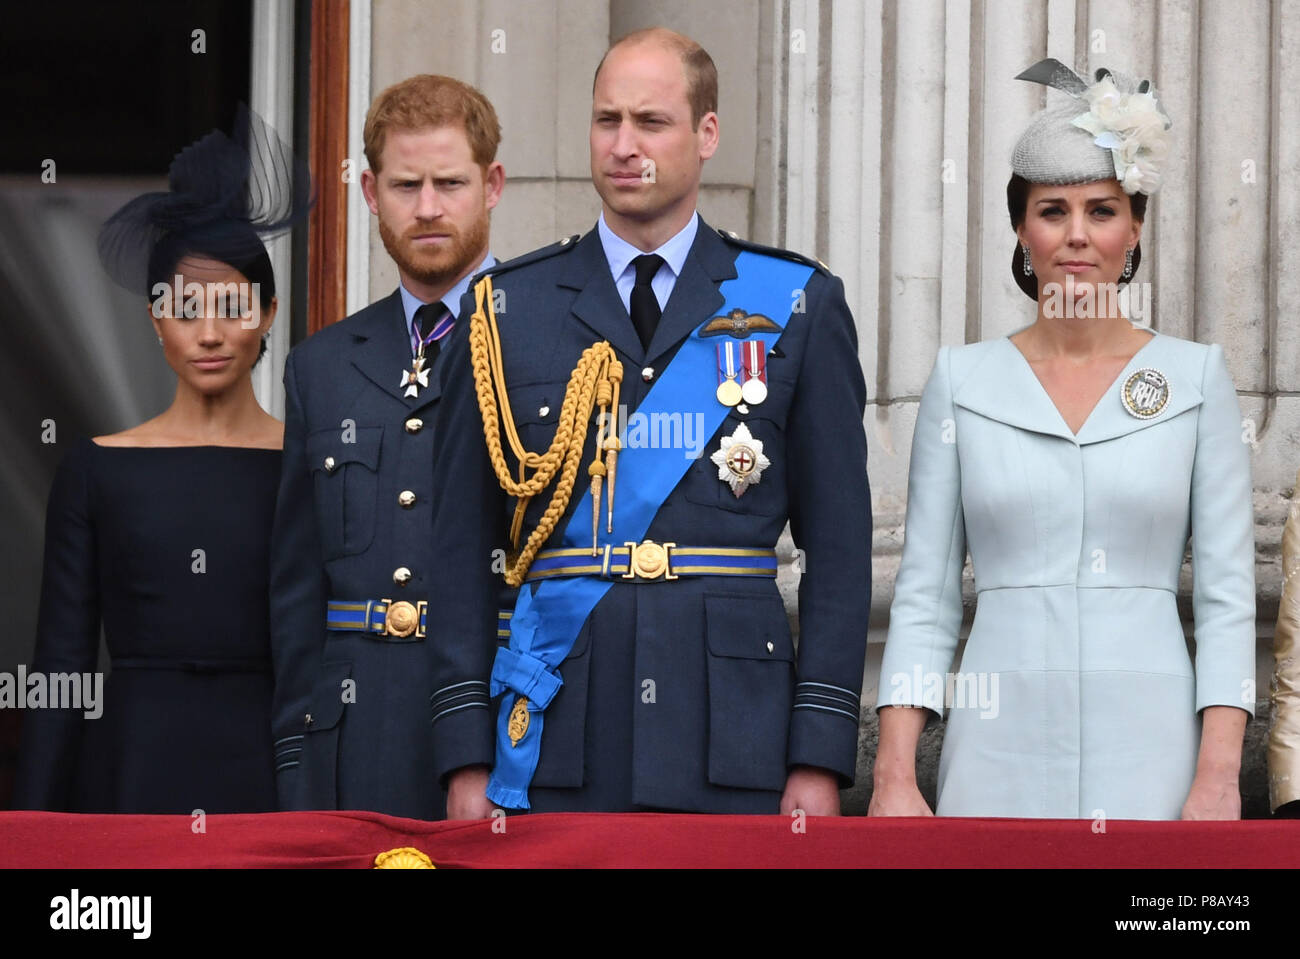 (De gauche à droite) La Duchesse de Sussex, duc de Sussex, duc de Cambridge et la duchesse de Cambridge sur le balcon de Buckingham Palace, où ils ont vu un défilé aérien de la Royal Air Force sur le centre de Londres à l'occasion du centenaire de la Royal Air Force. Banque D'Images